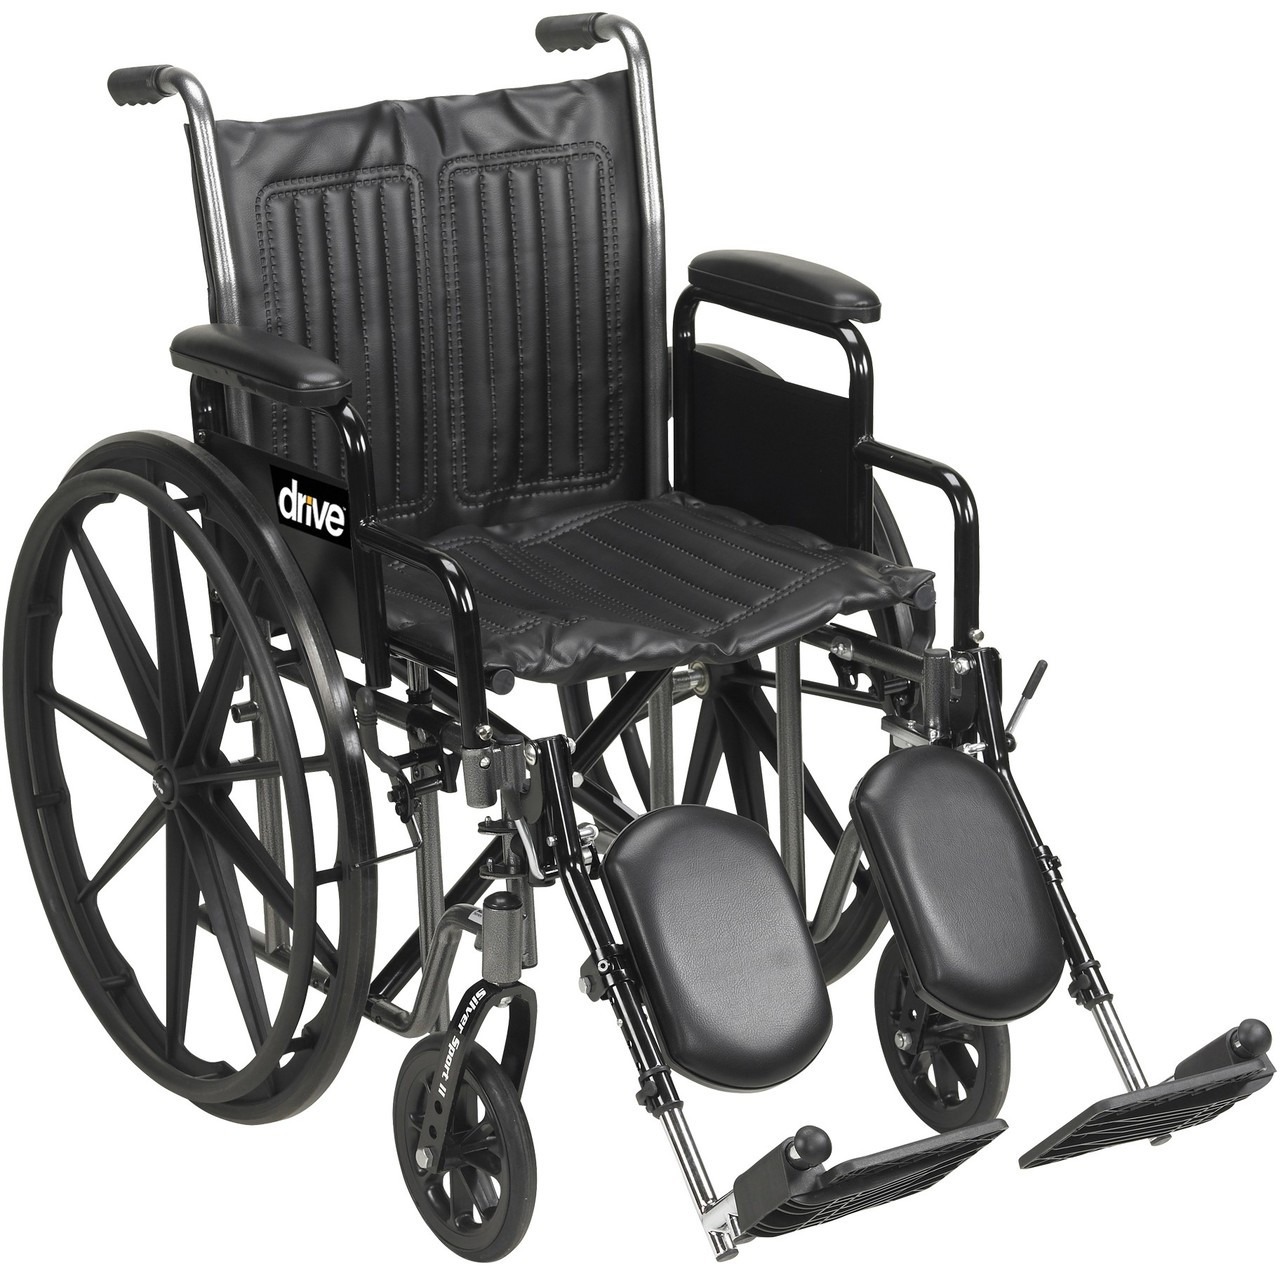 SSP218DDA-ELR Silver Sport 2 Wheelchair, Detachable Desk Arms, Elevating Leg Rests, 18" Seat (SSP218DDA-ELR)